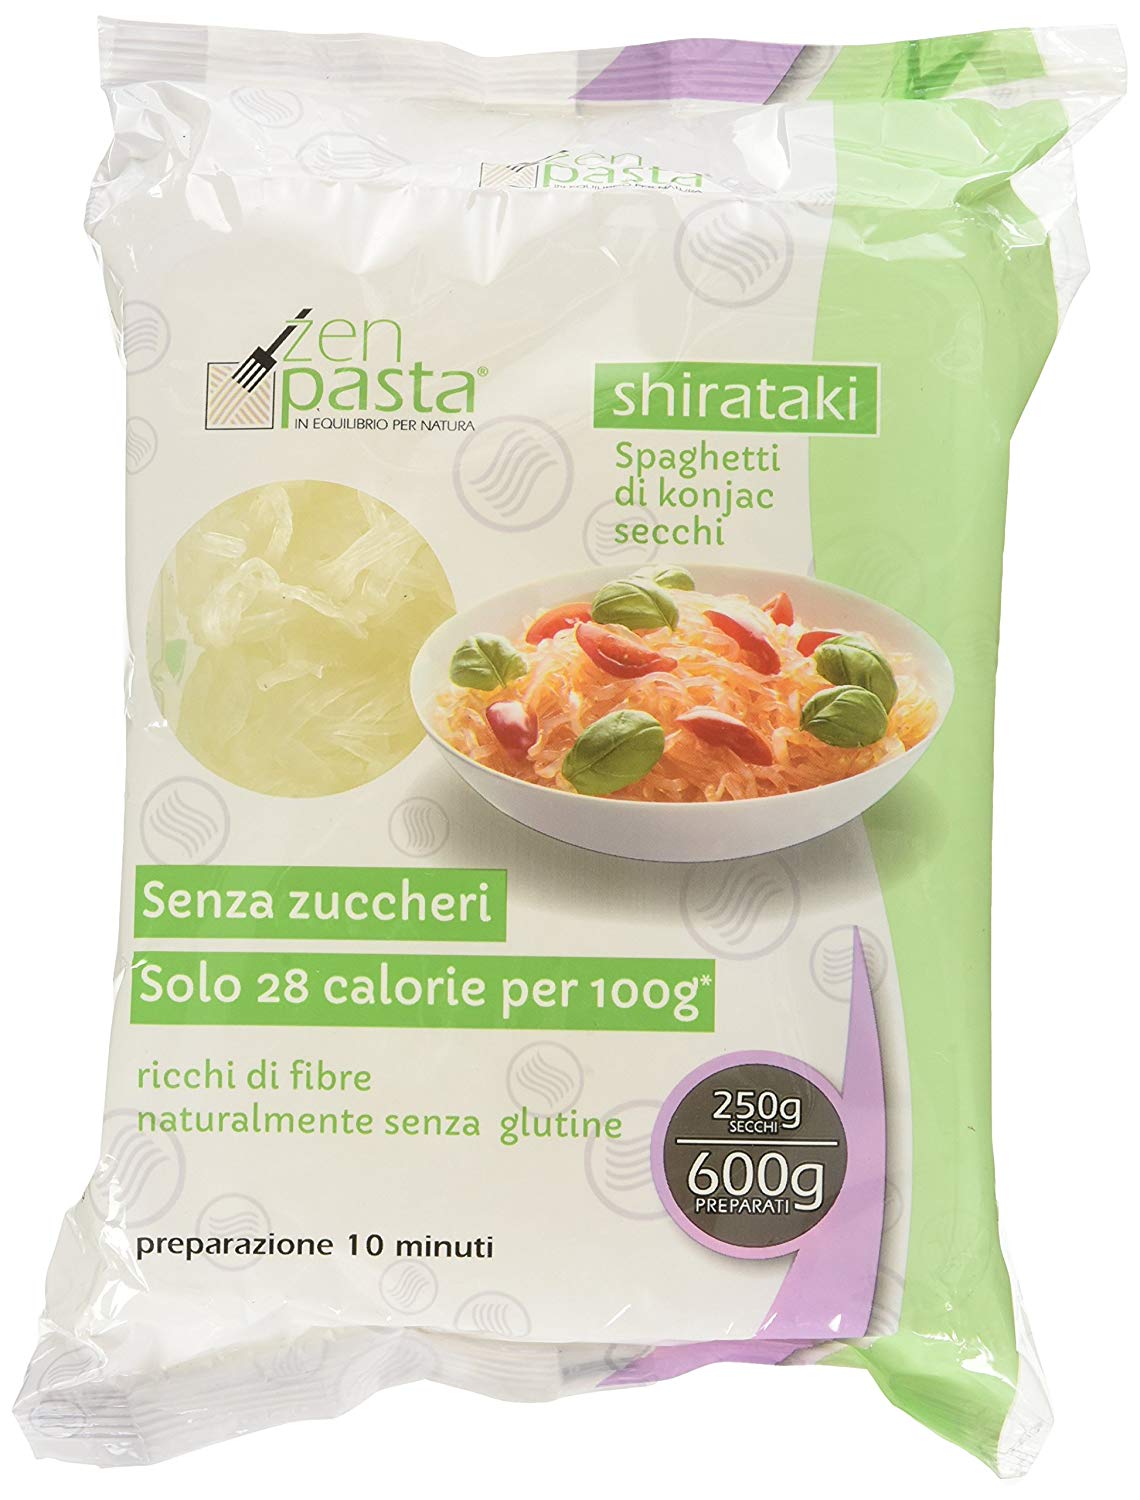 Image of Zen Pasta Shirataki Spaghetti Essiccati Biologico 250g